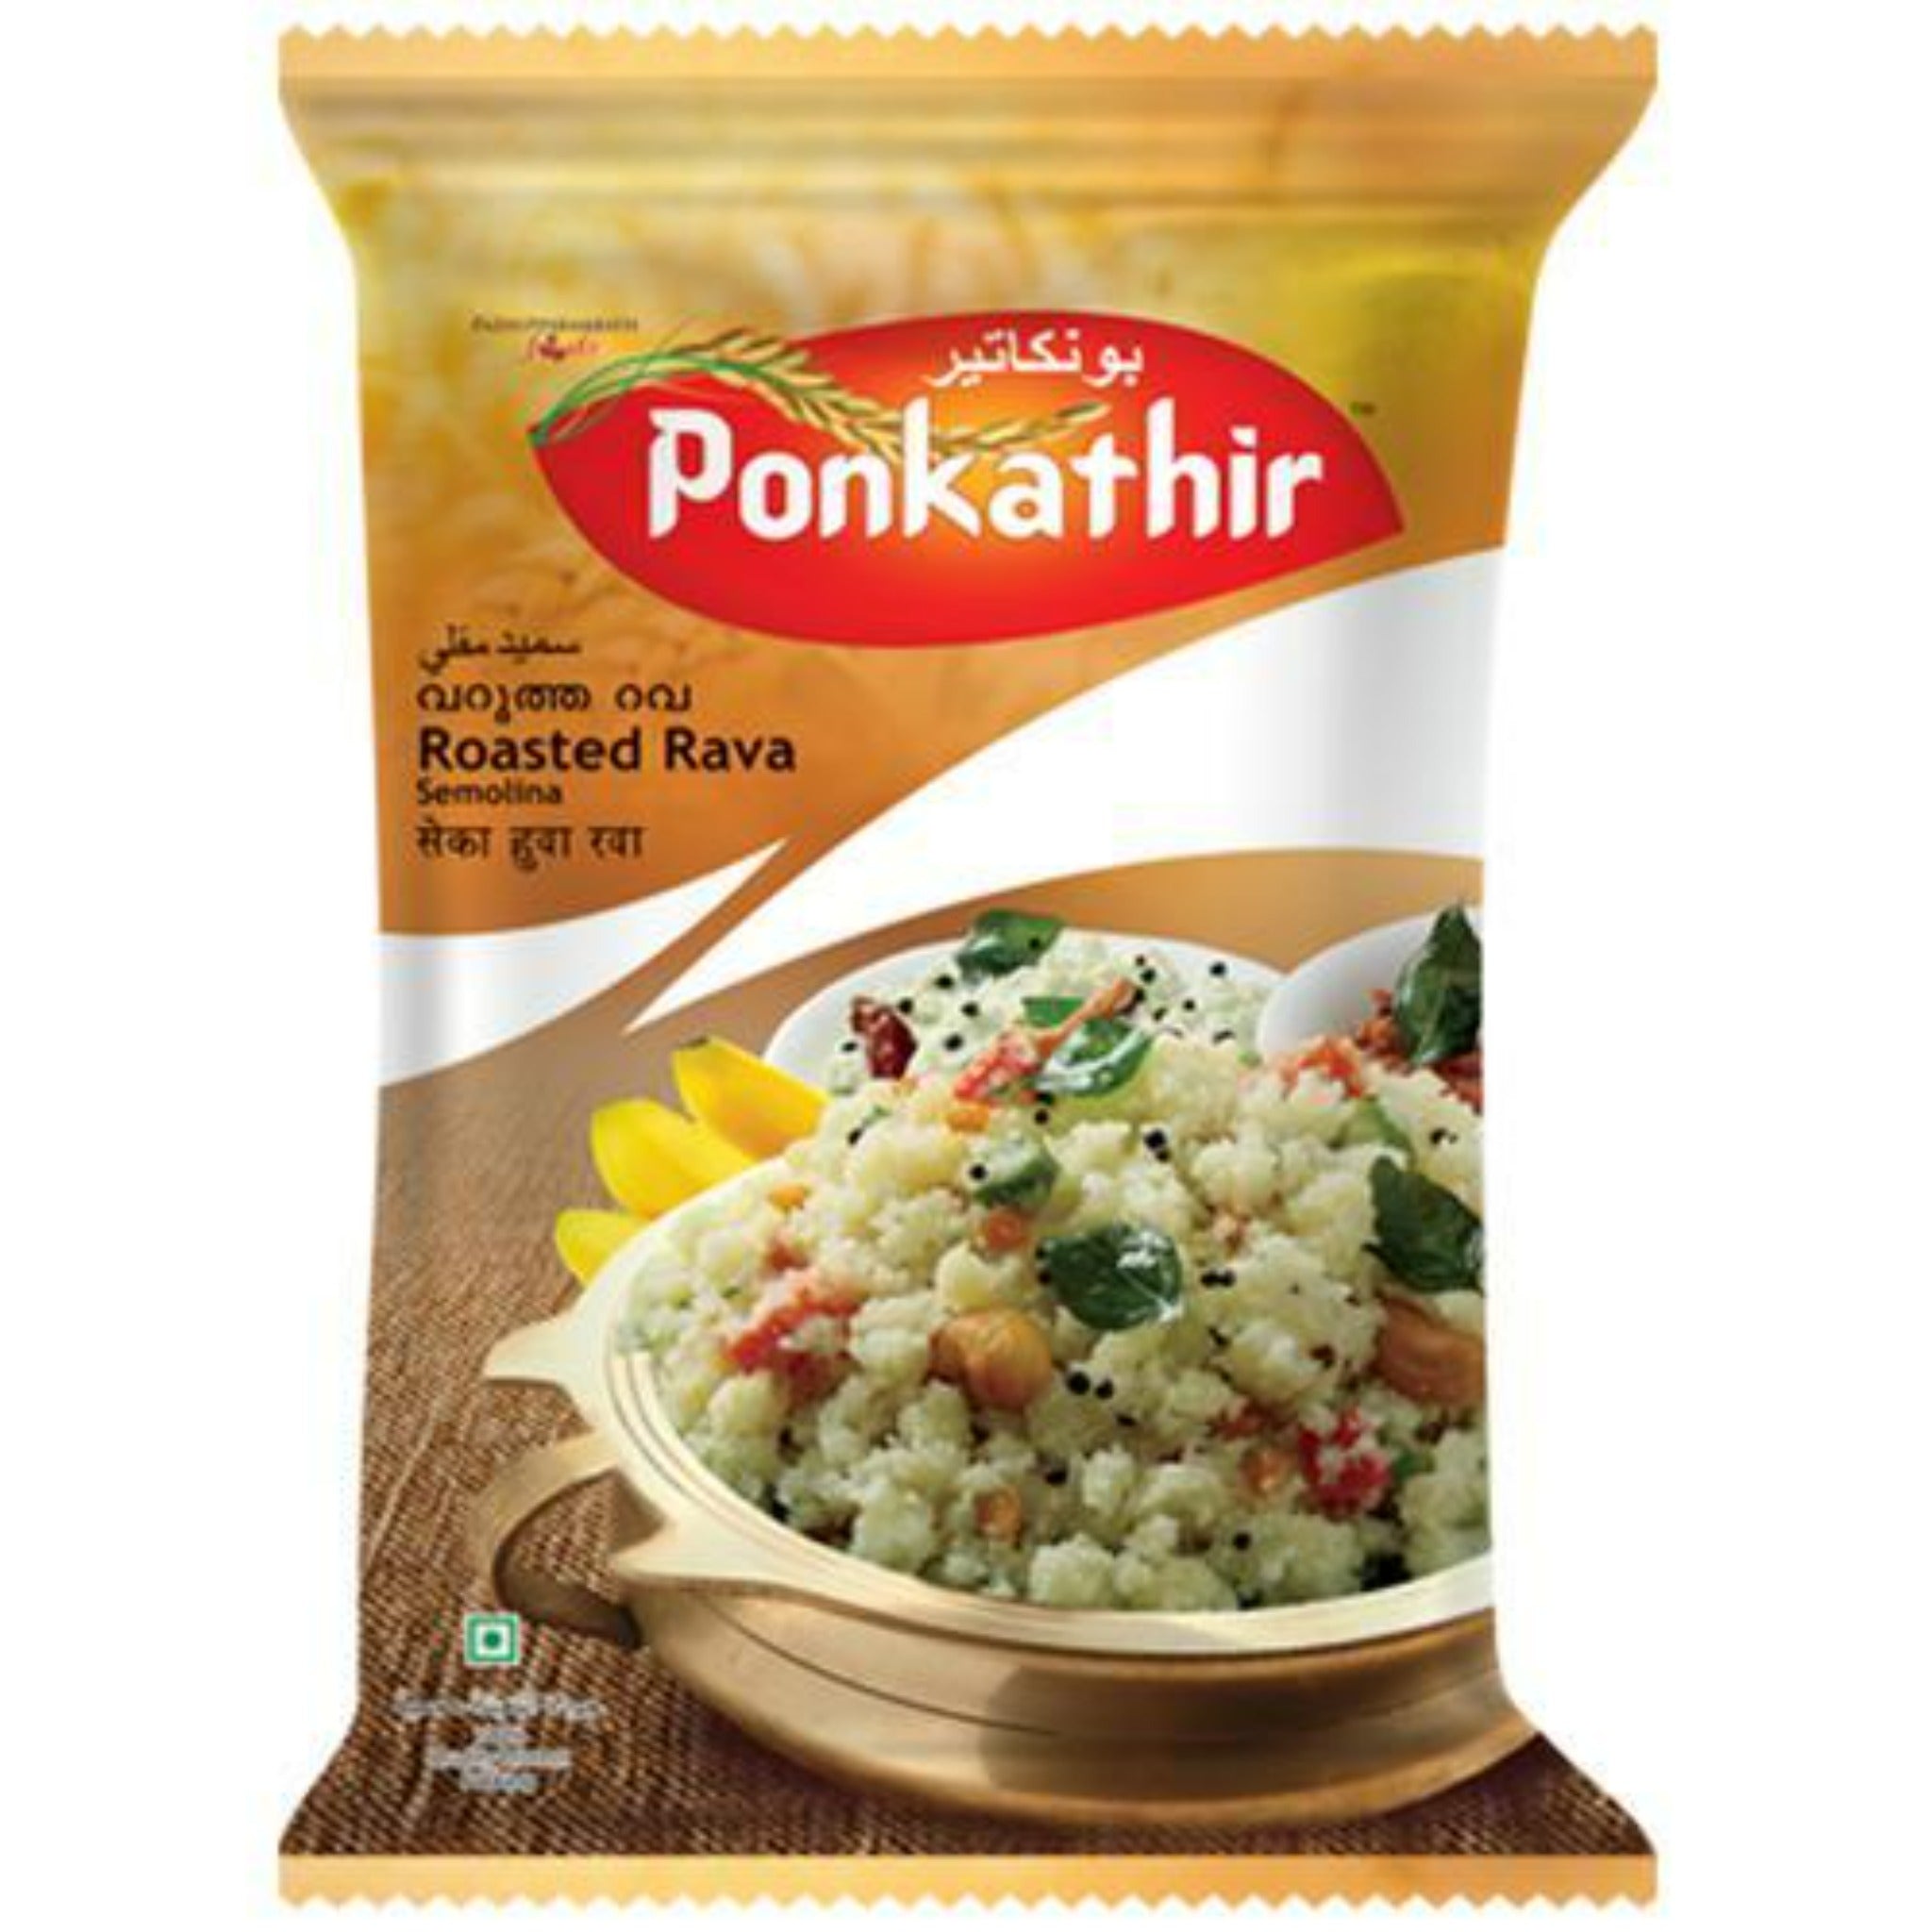 Ponkathir Roasted Rava 1kg